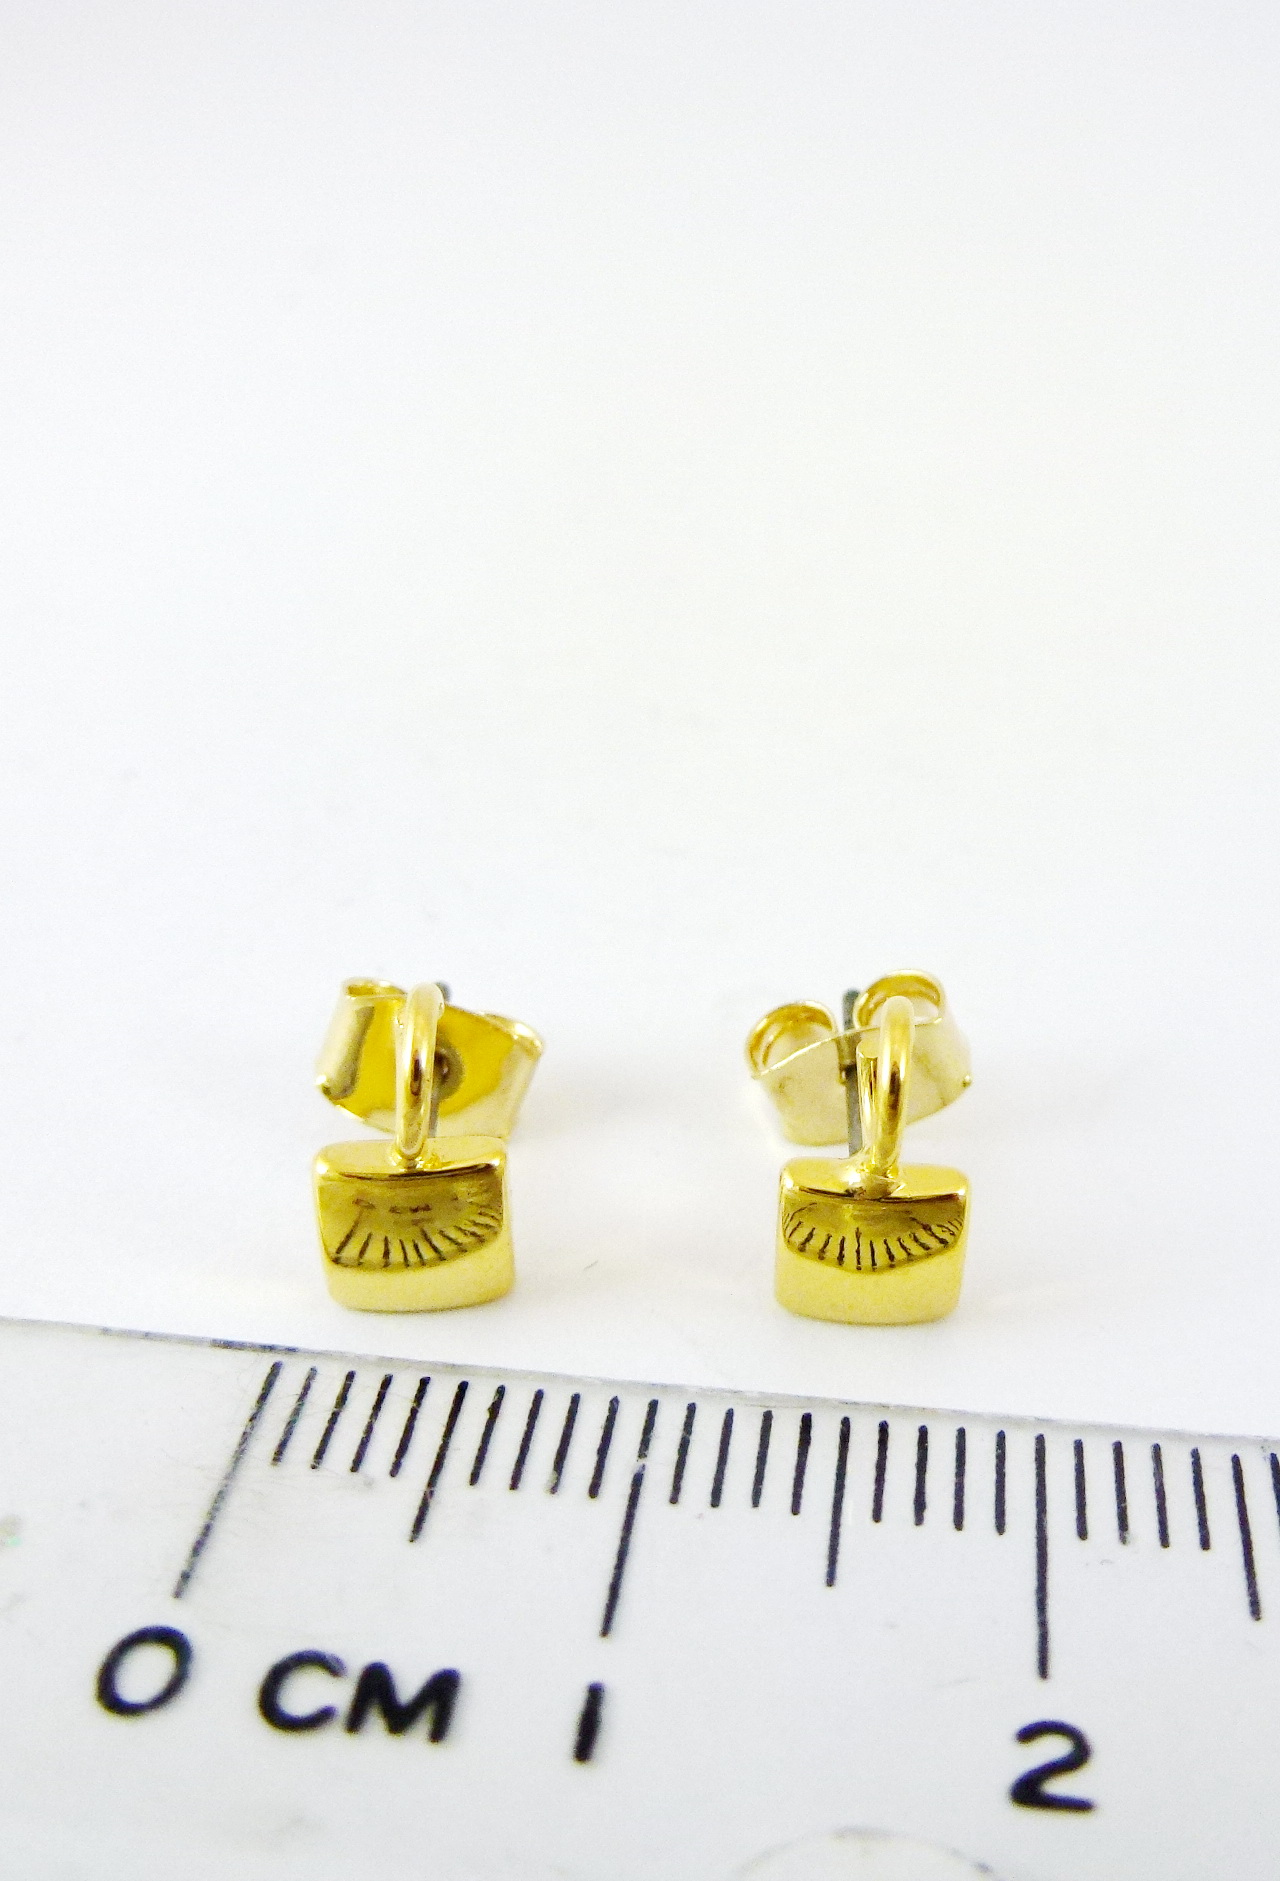 5MM銅鍍金色正方形不鏽鋼耳針